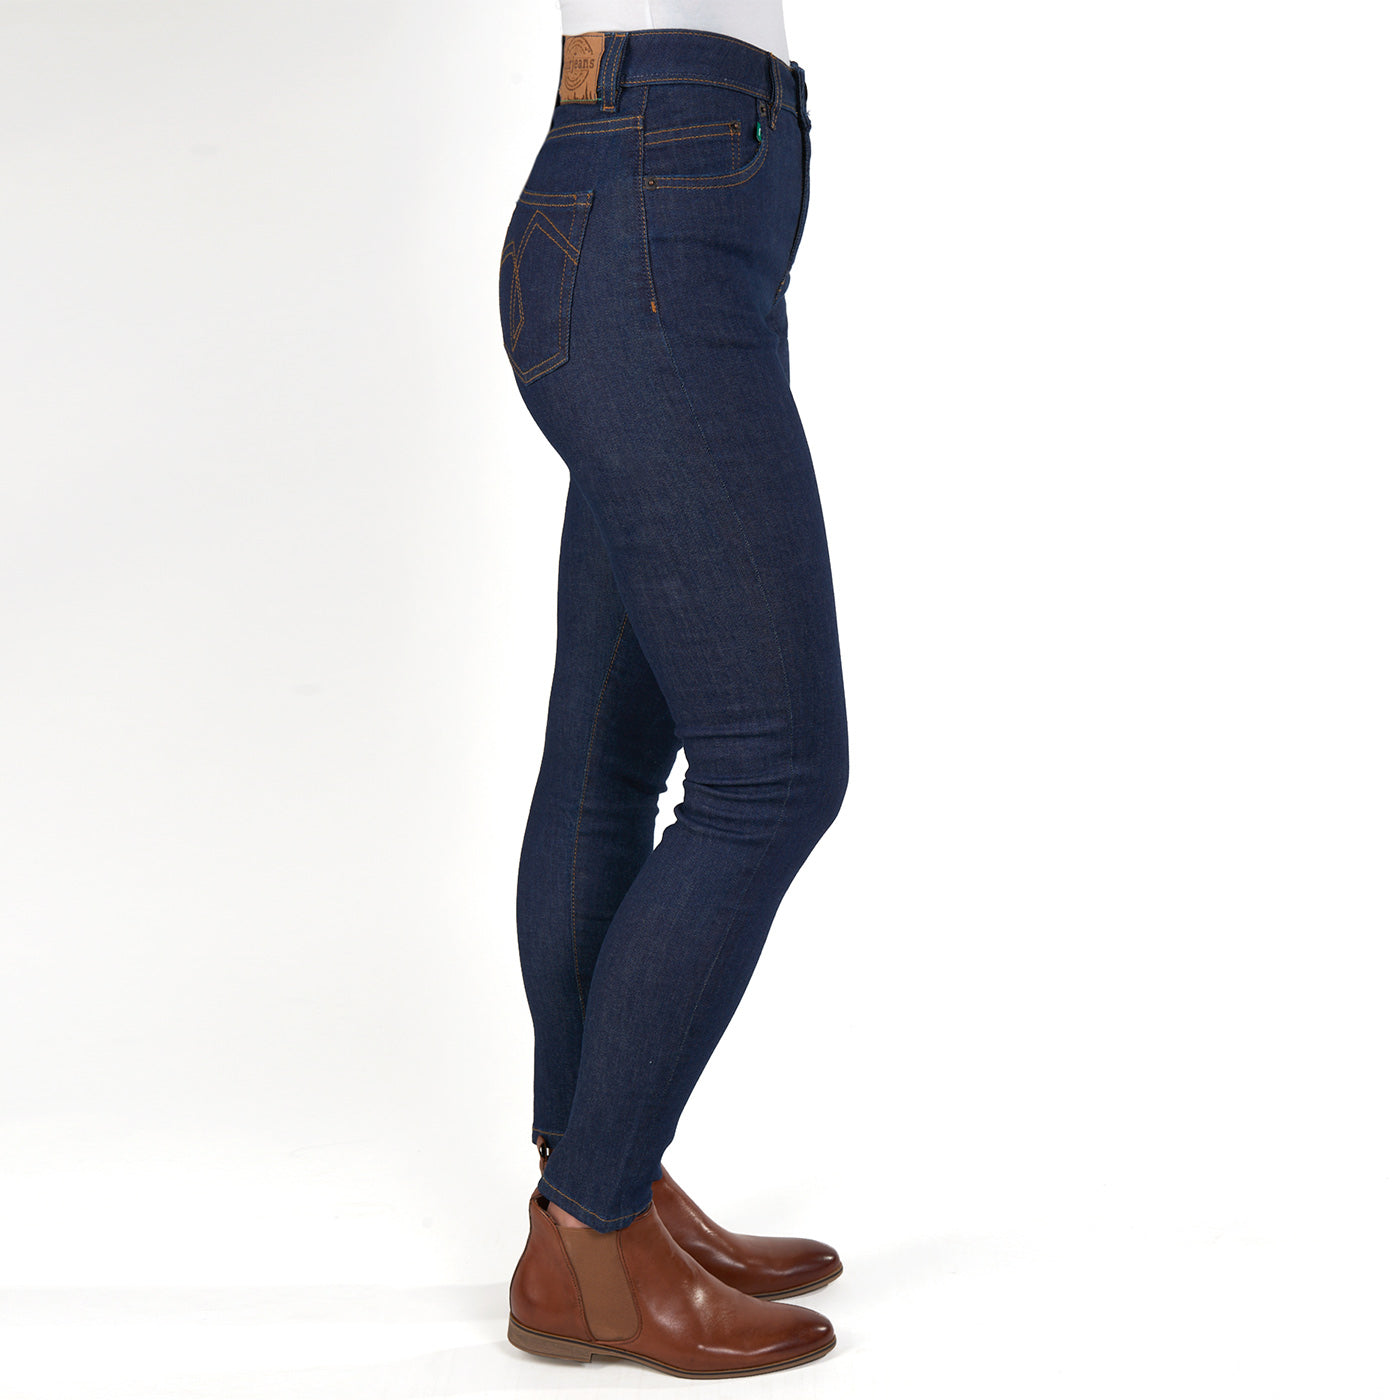 Damen Bio Jeans Jeans Skinny Fit aus Bio-Baumwolle. | Faire Kleidung –  fairjeans